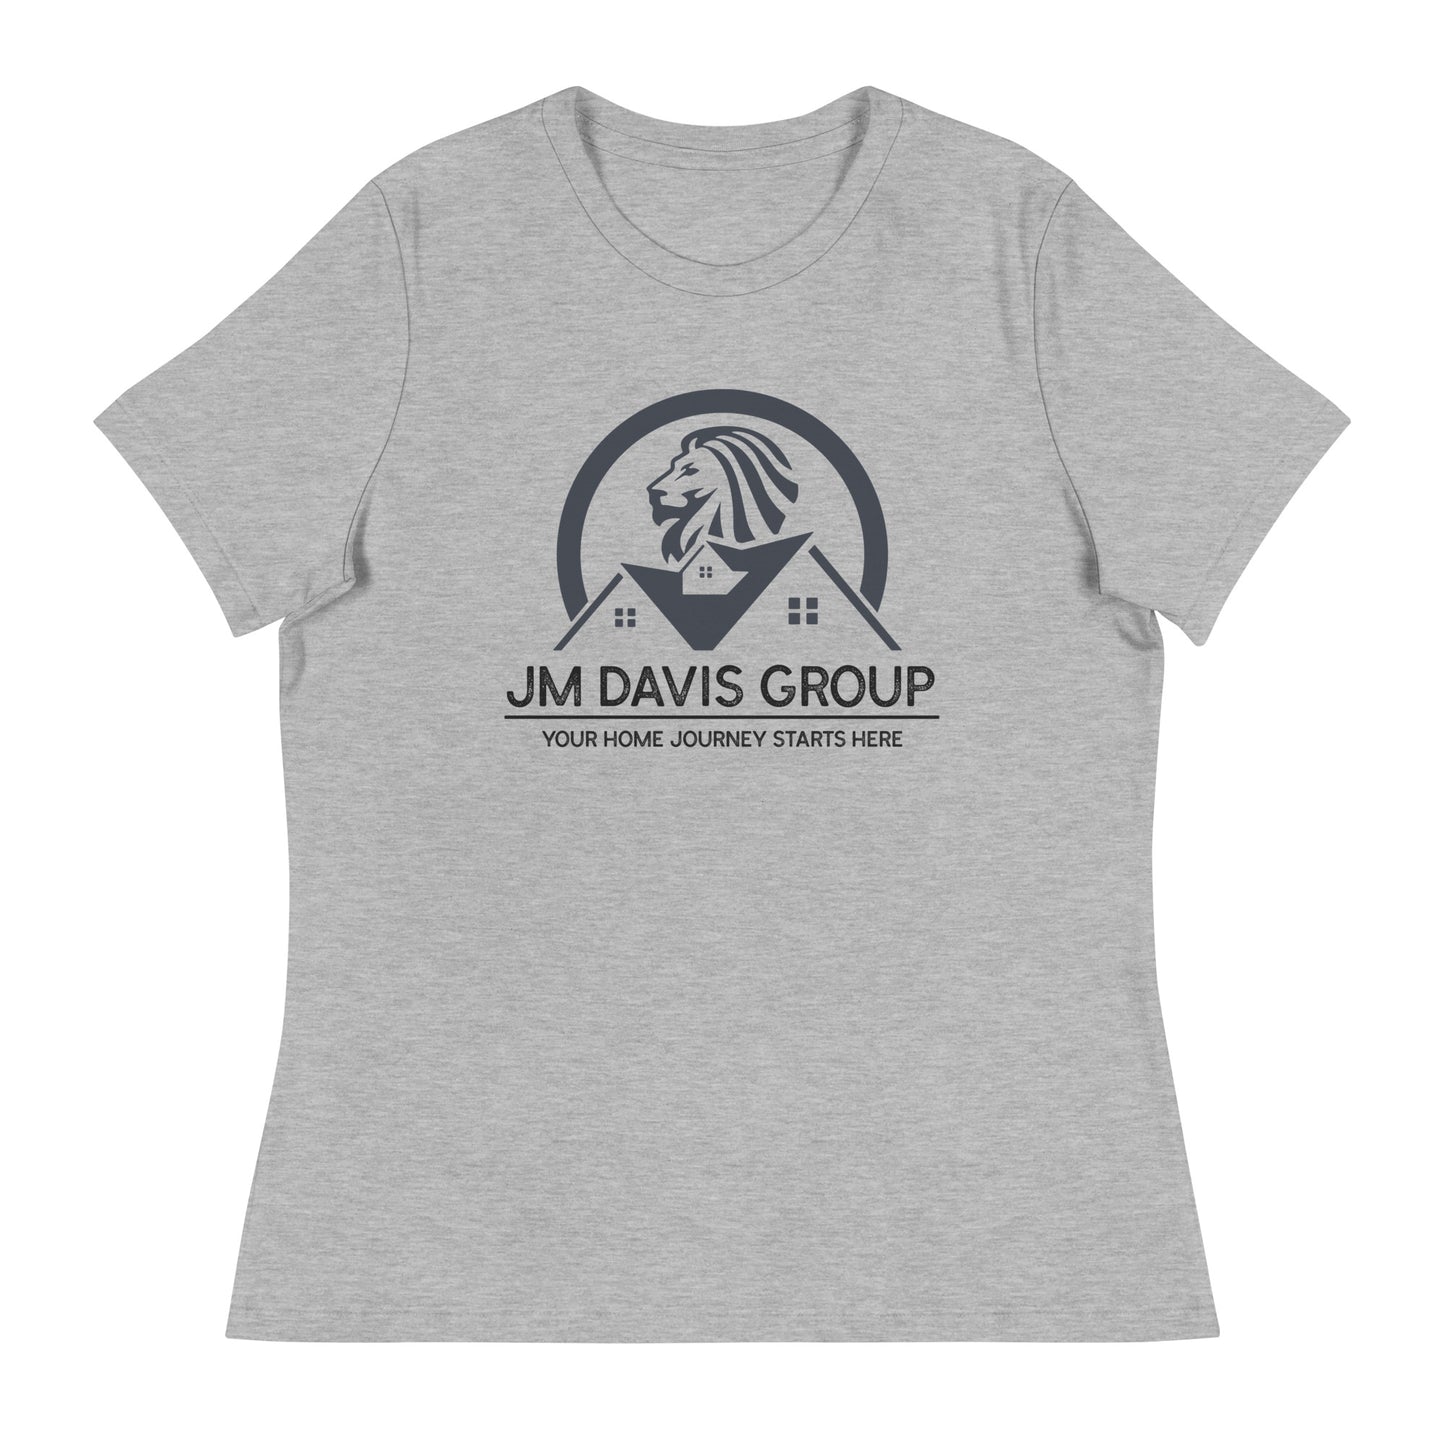 JM Davis Group Women's Relaxed T-Shirt